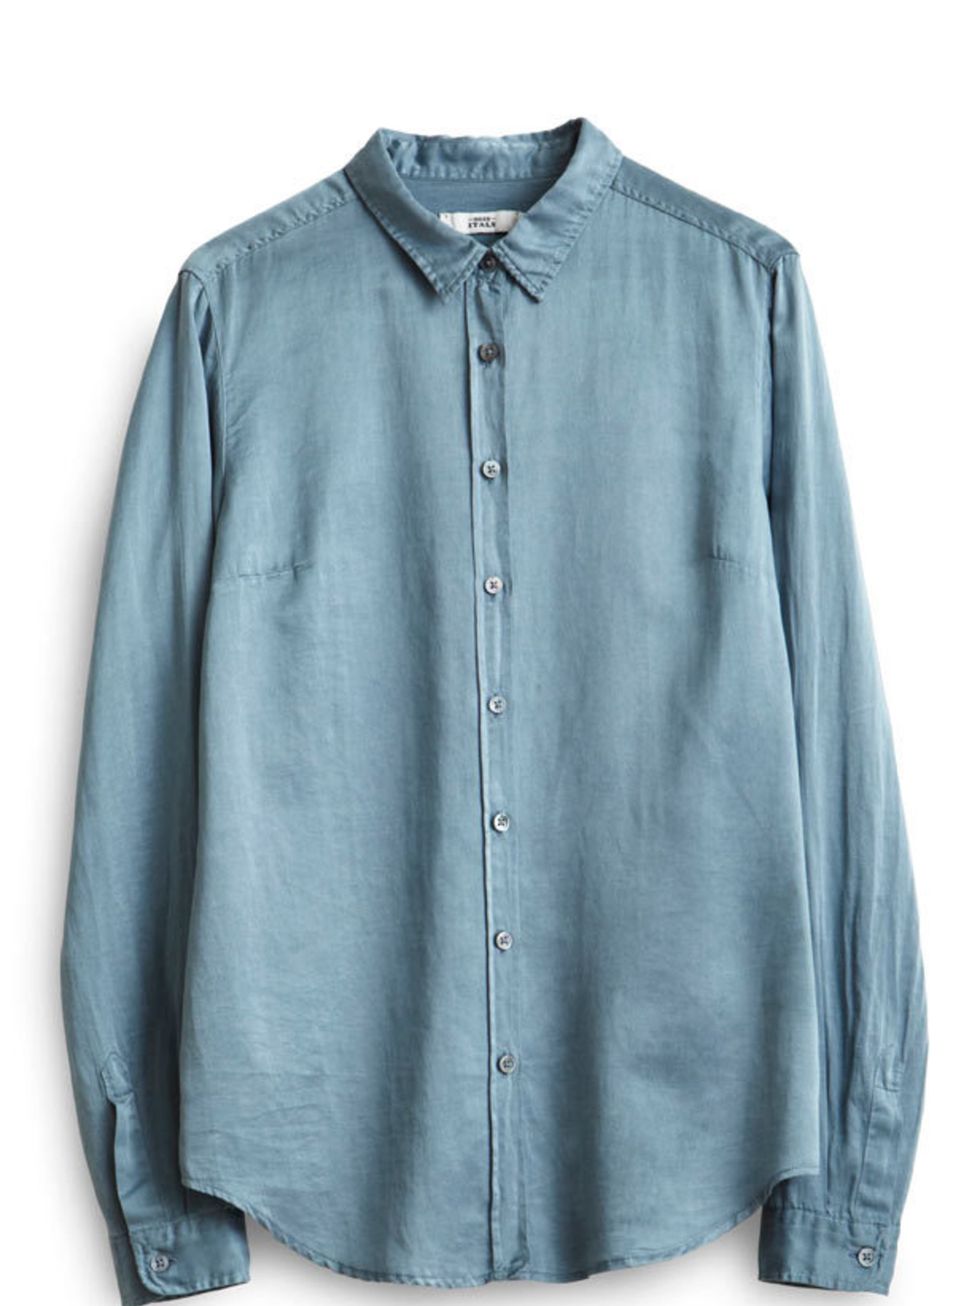 <p>0039 Italy silk shirt, £95, at <a href="http://www.editblue.com/ProductDetails.aspx/Cotton-Silk+Mix+Shirt">EditBlue.com</a></p>